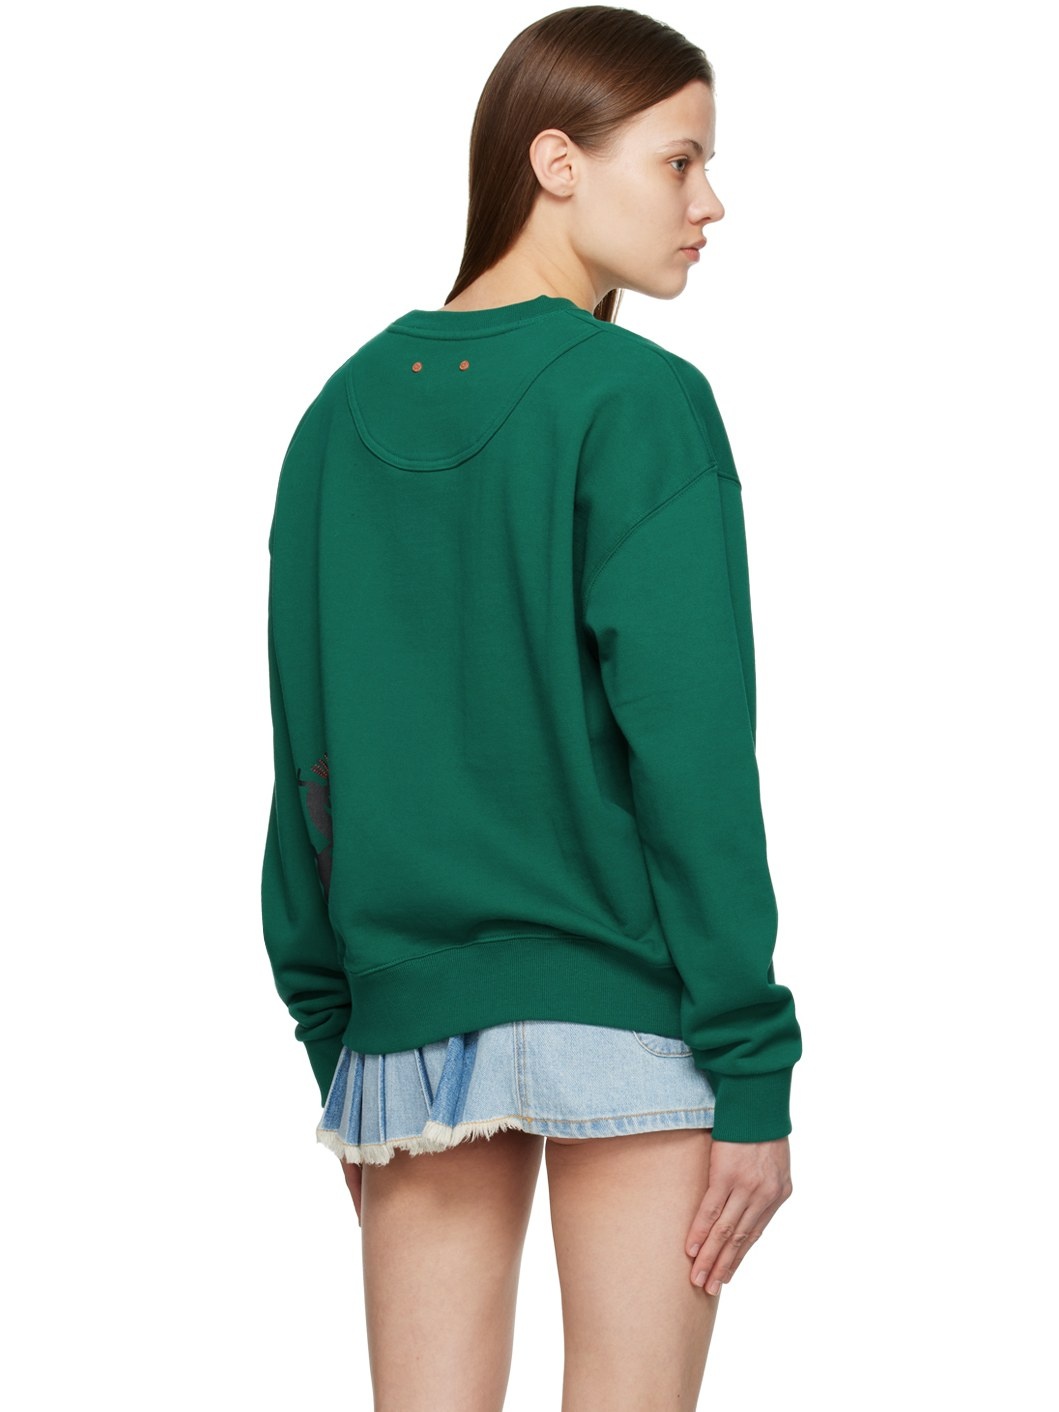 Green Sun Dance Sweatshirt - 3